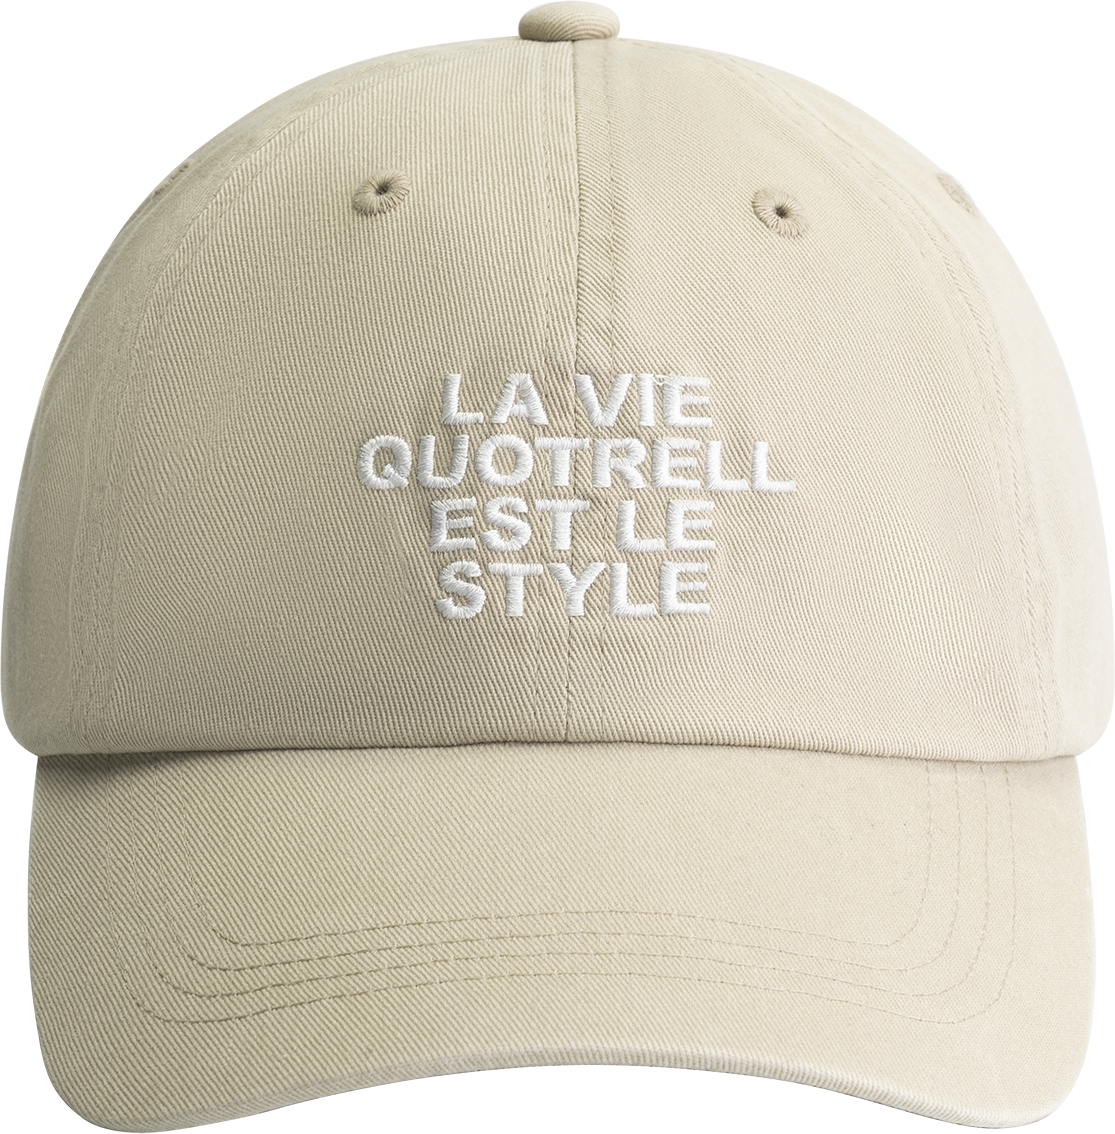 Quotrell La Vie Cap | Beige/off White Beige